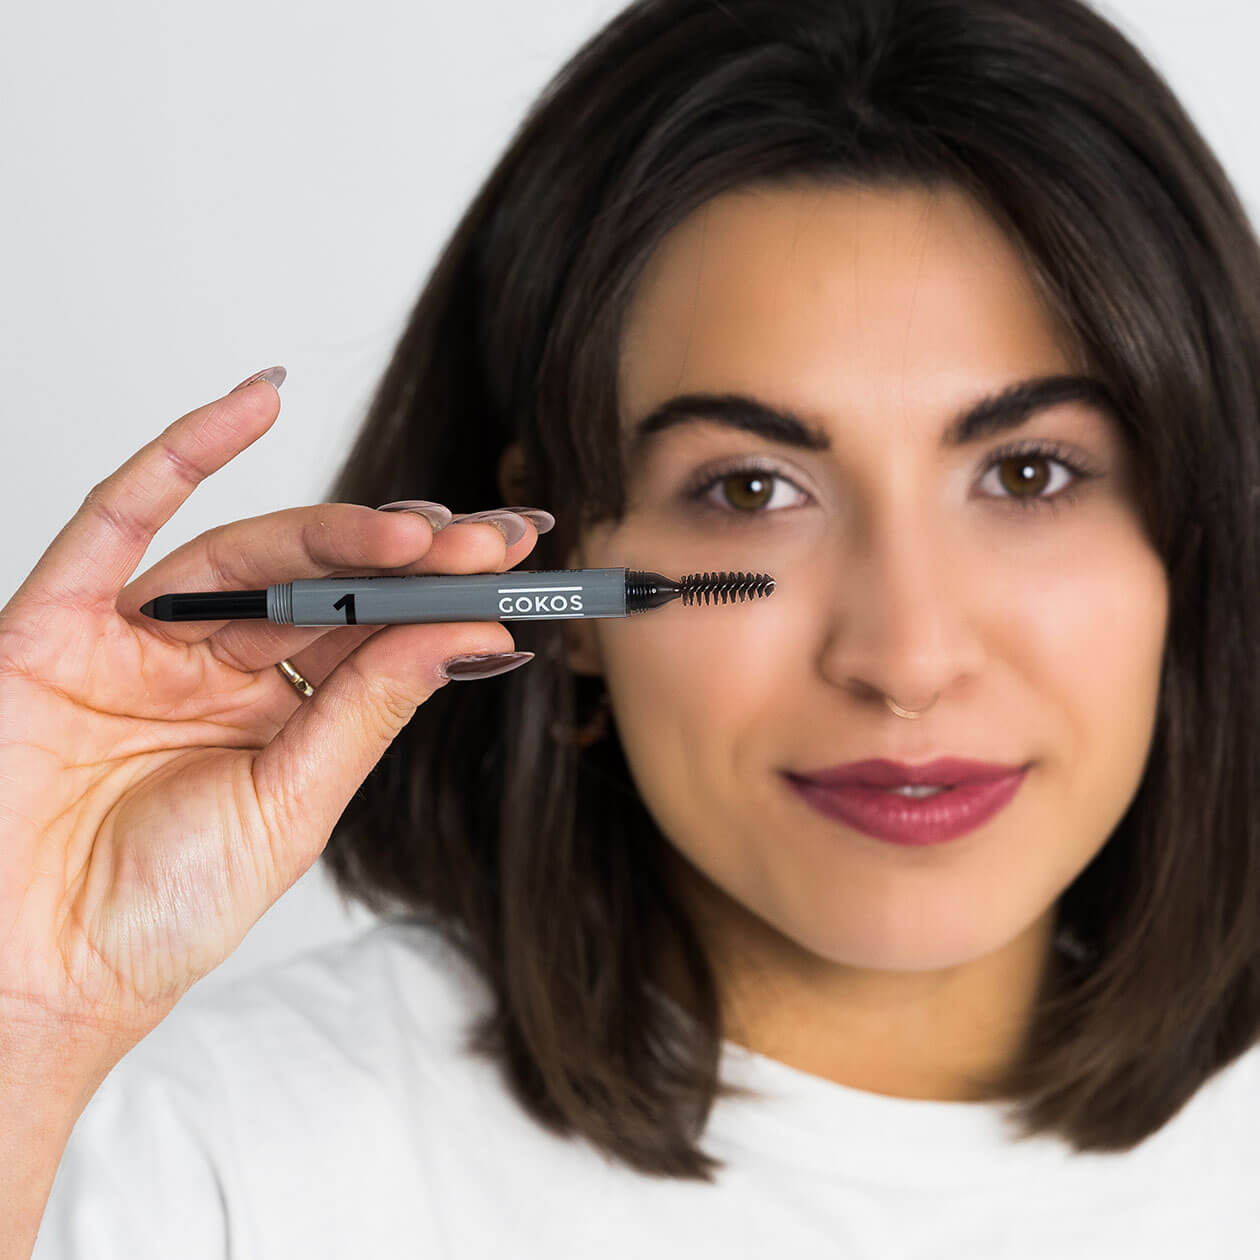 GOKOS - Beauty to go - Indie-Makeup-Brand mit Stiften 42